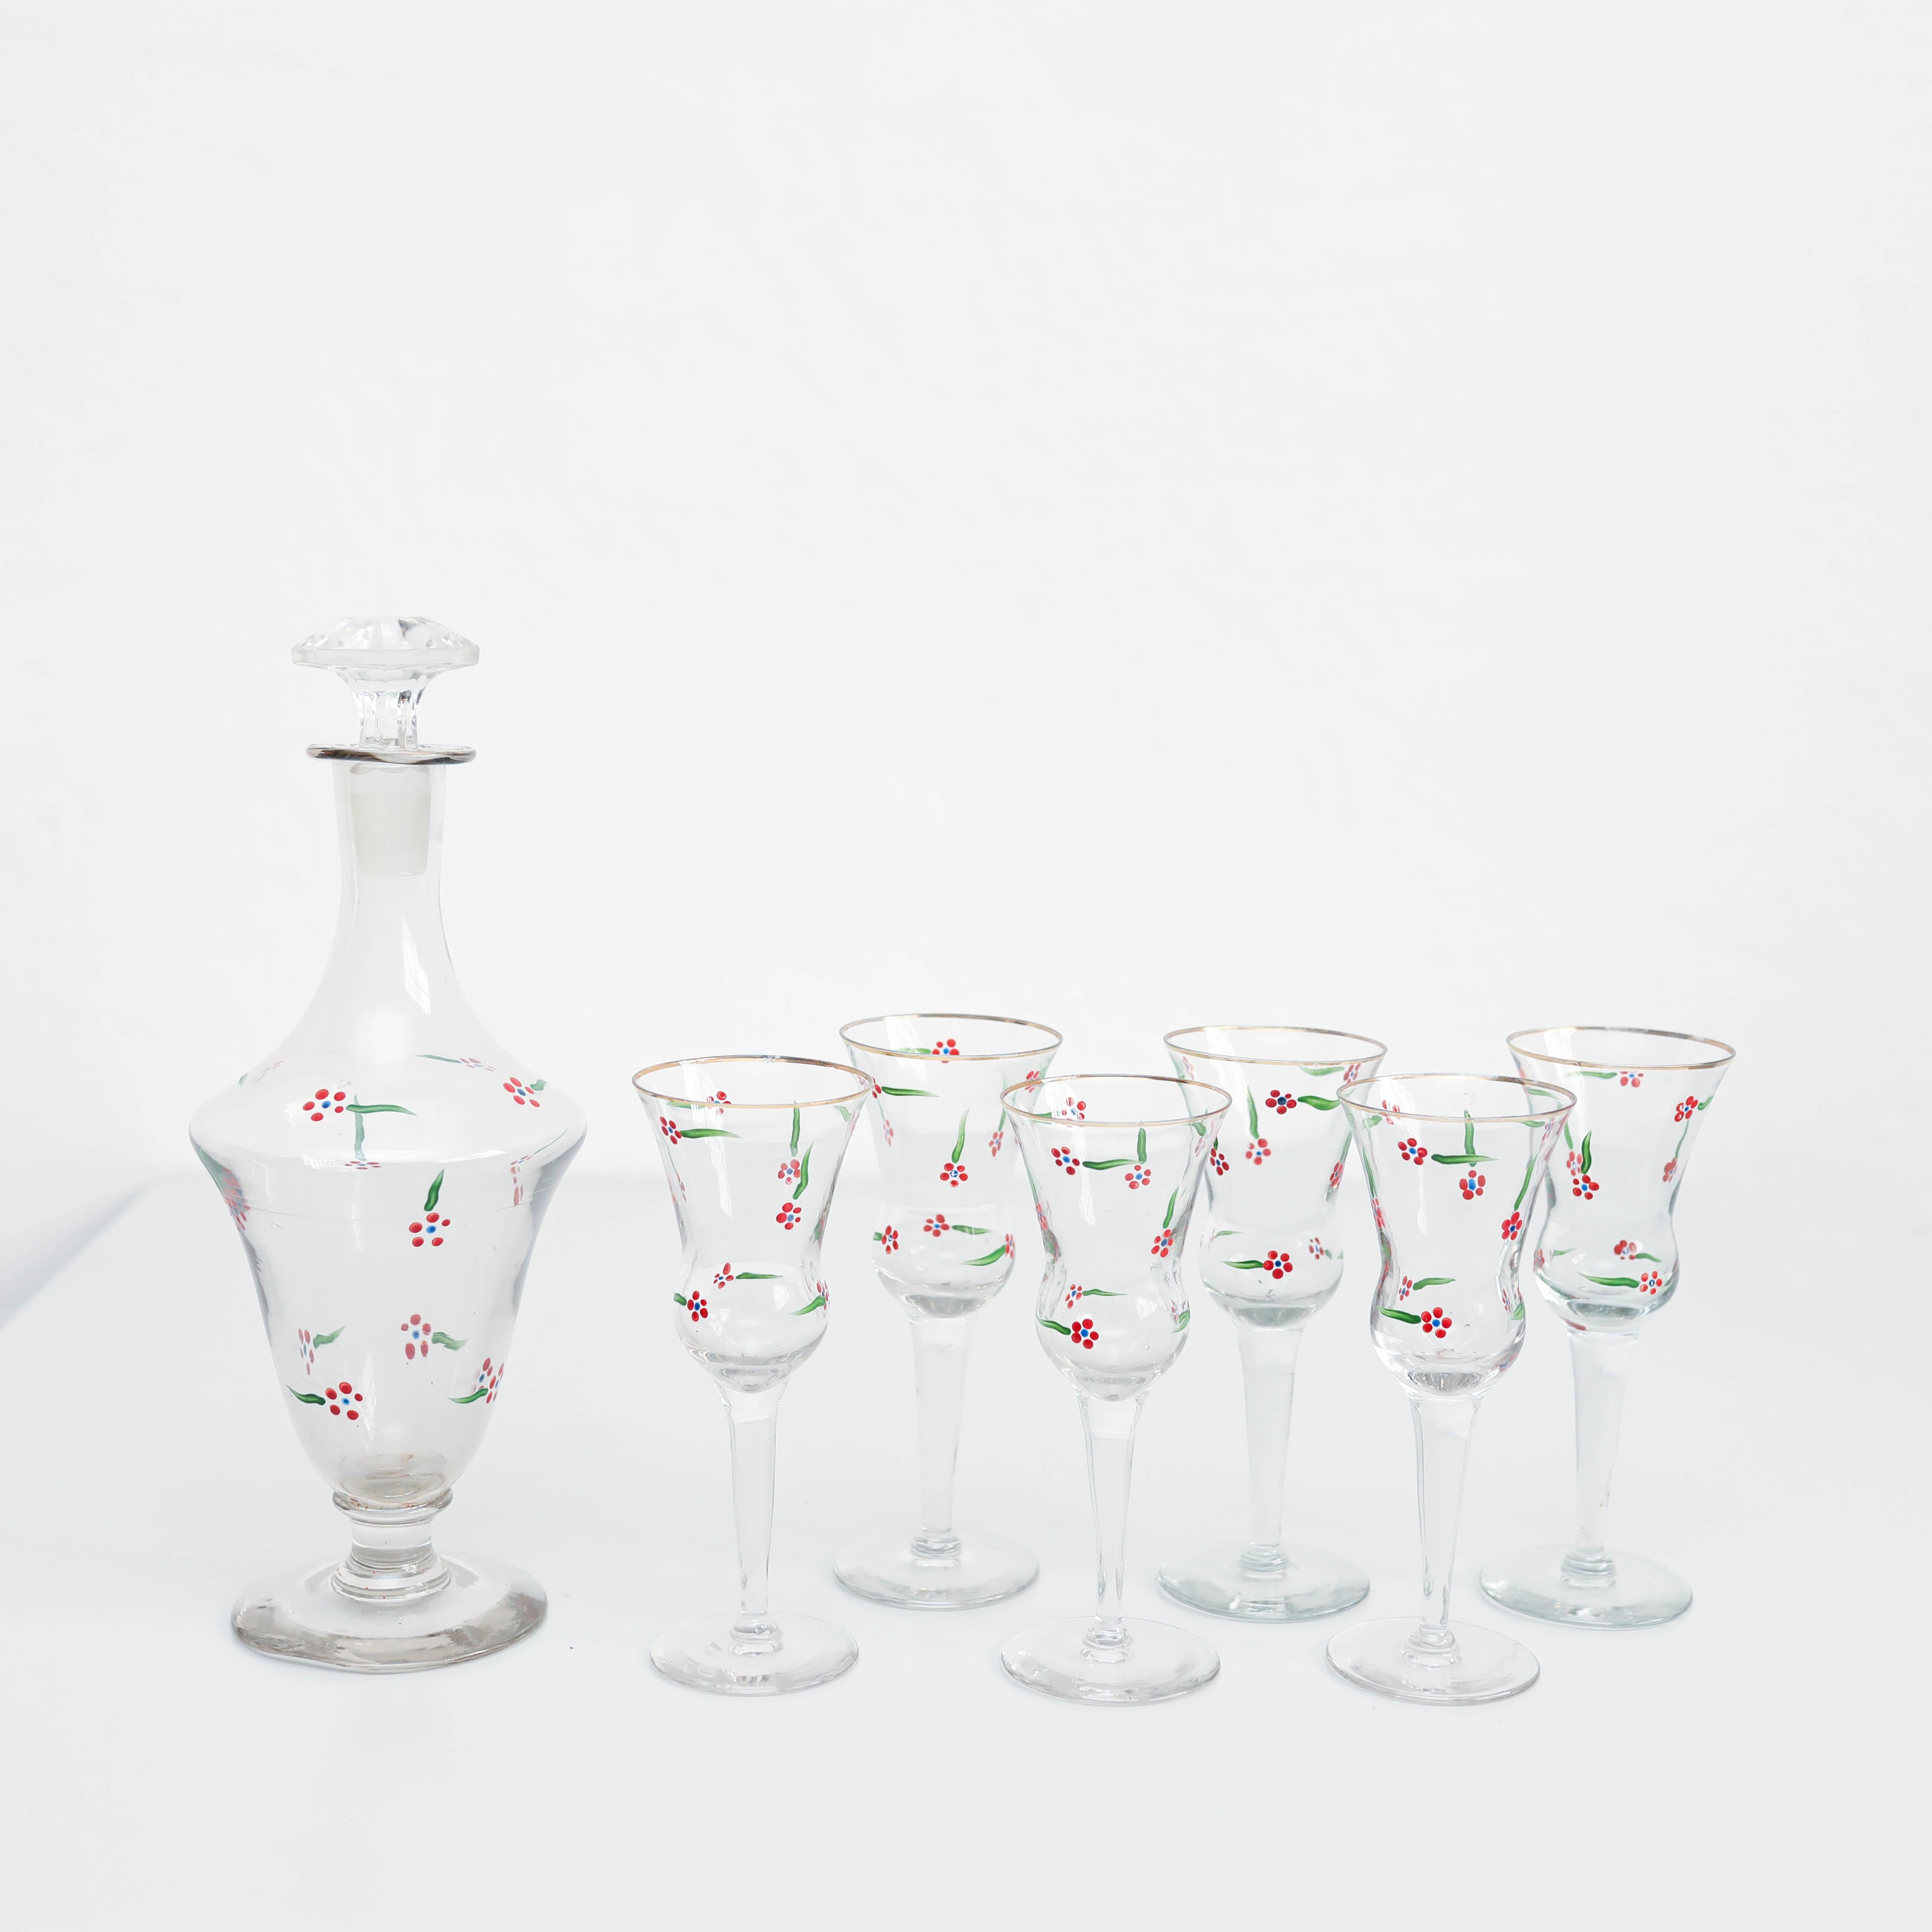  Satz von 6 antiken, handbemalten Glas-Weinbechern und Glasvase.

Hergestellt von einem unbekannten Hersteller in Spanien, um 1940.

Originaler Zustand mit geringen alters- und gebrauchsbedingten Abnutzungserscheinungen, der eine schöne Patina